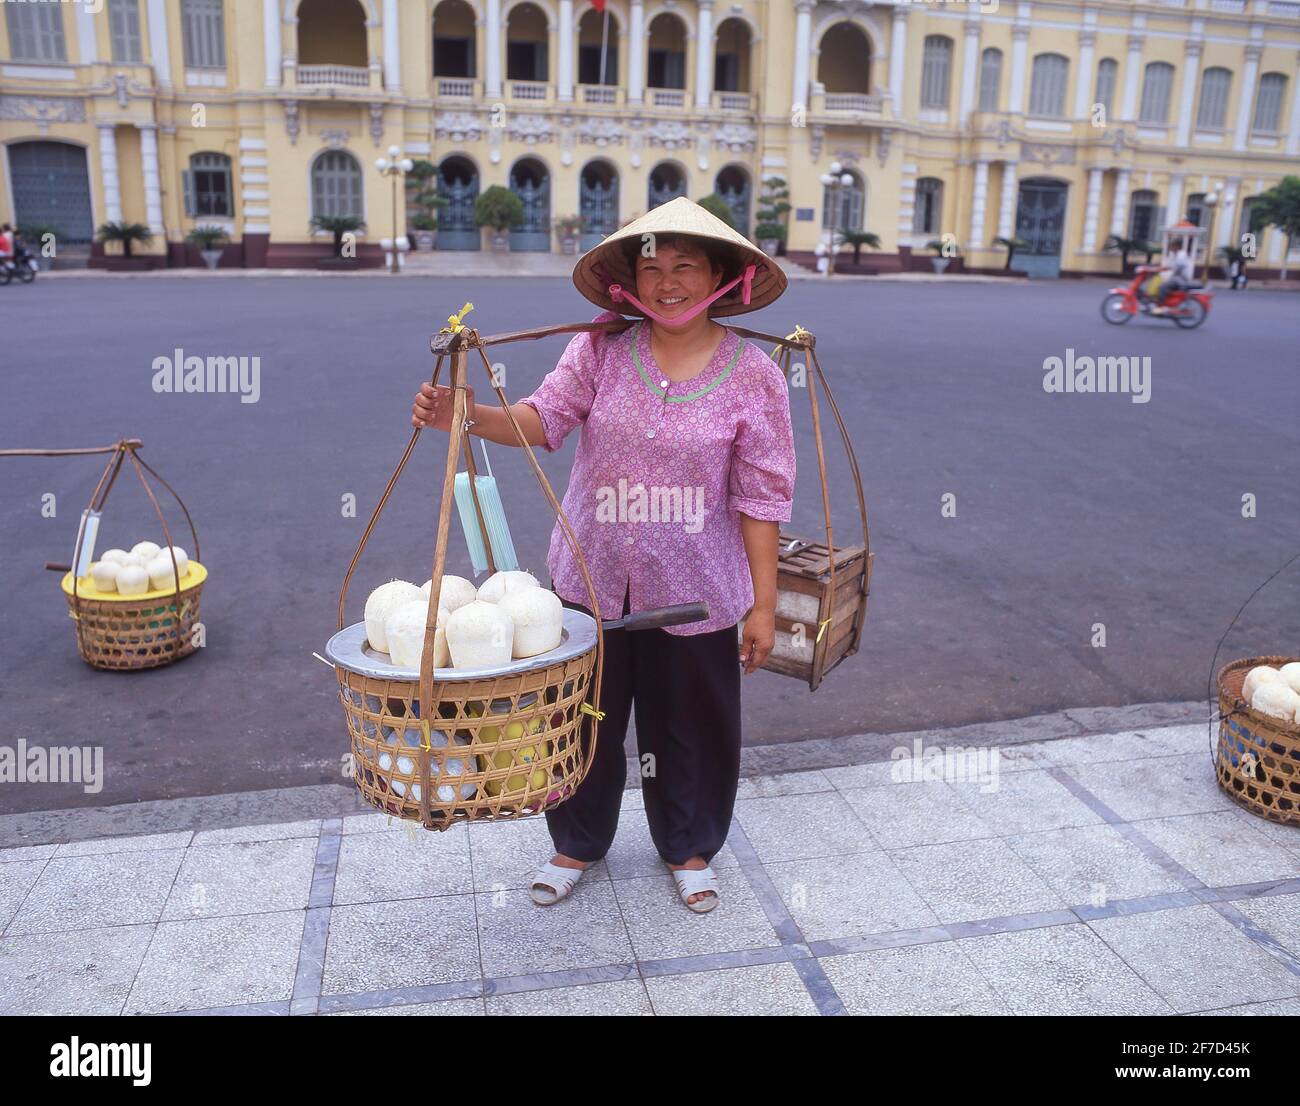 Donna venditore di succo di cocco di fronte ho Chi Minh City Hall, Union Square, ho Chi Minh City (Saigon), Repubblica socialista del Vietnam Foto Stock